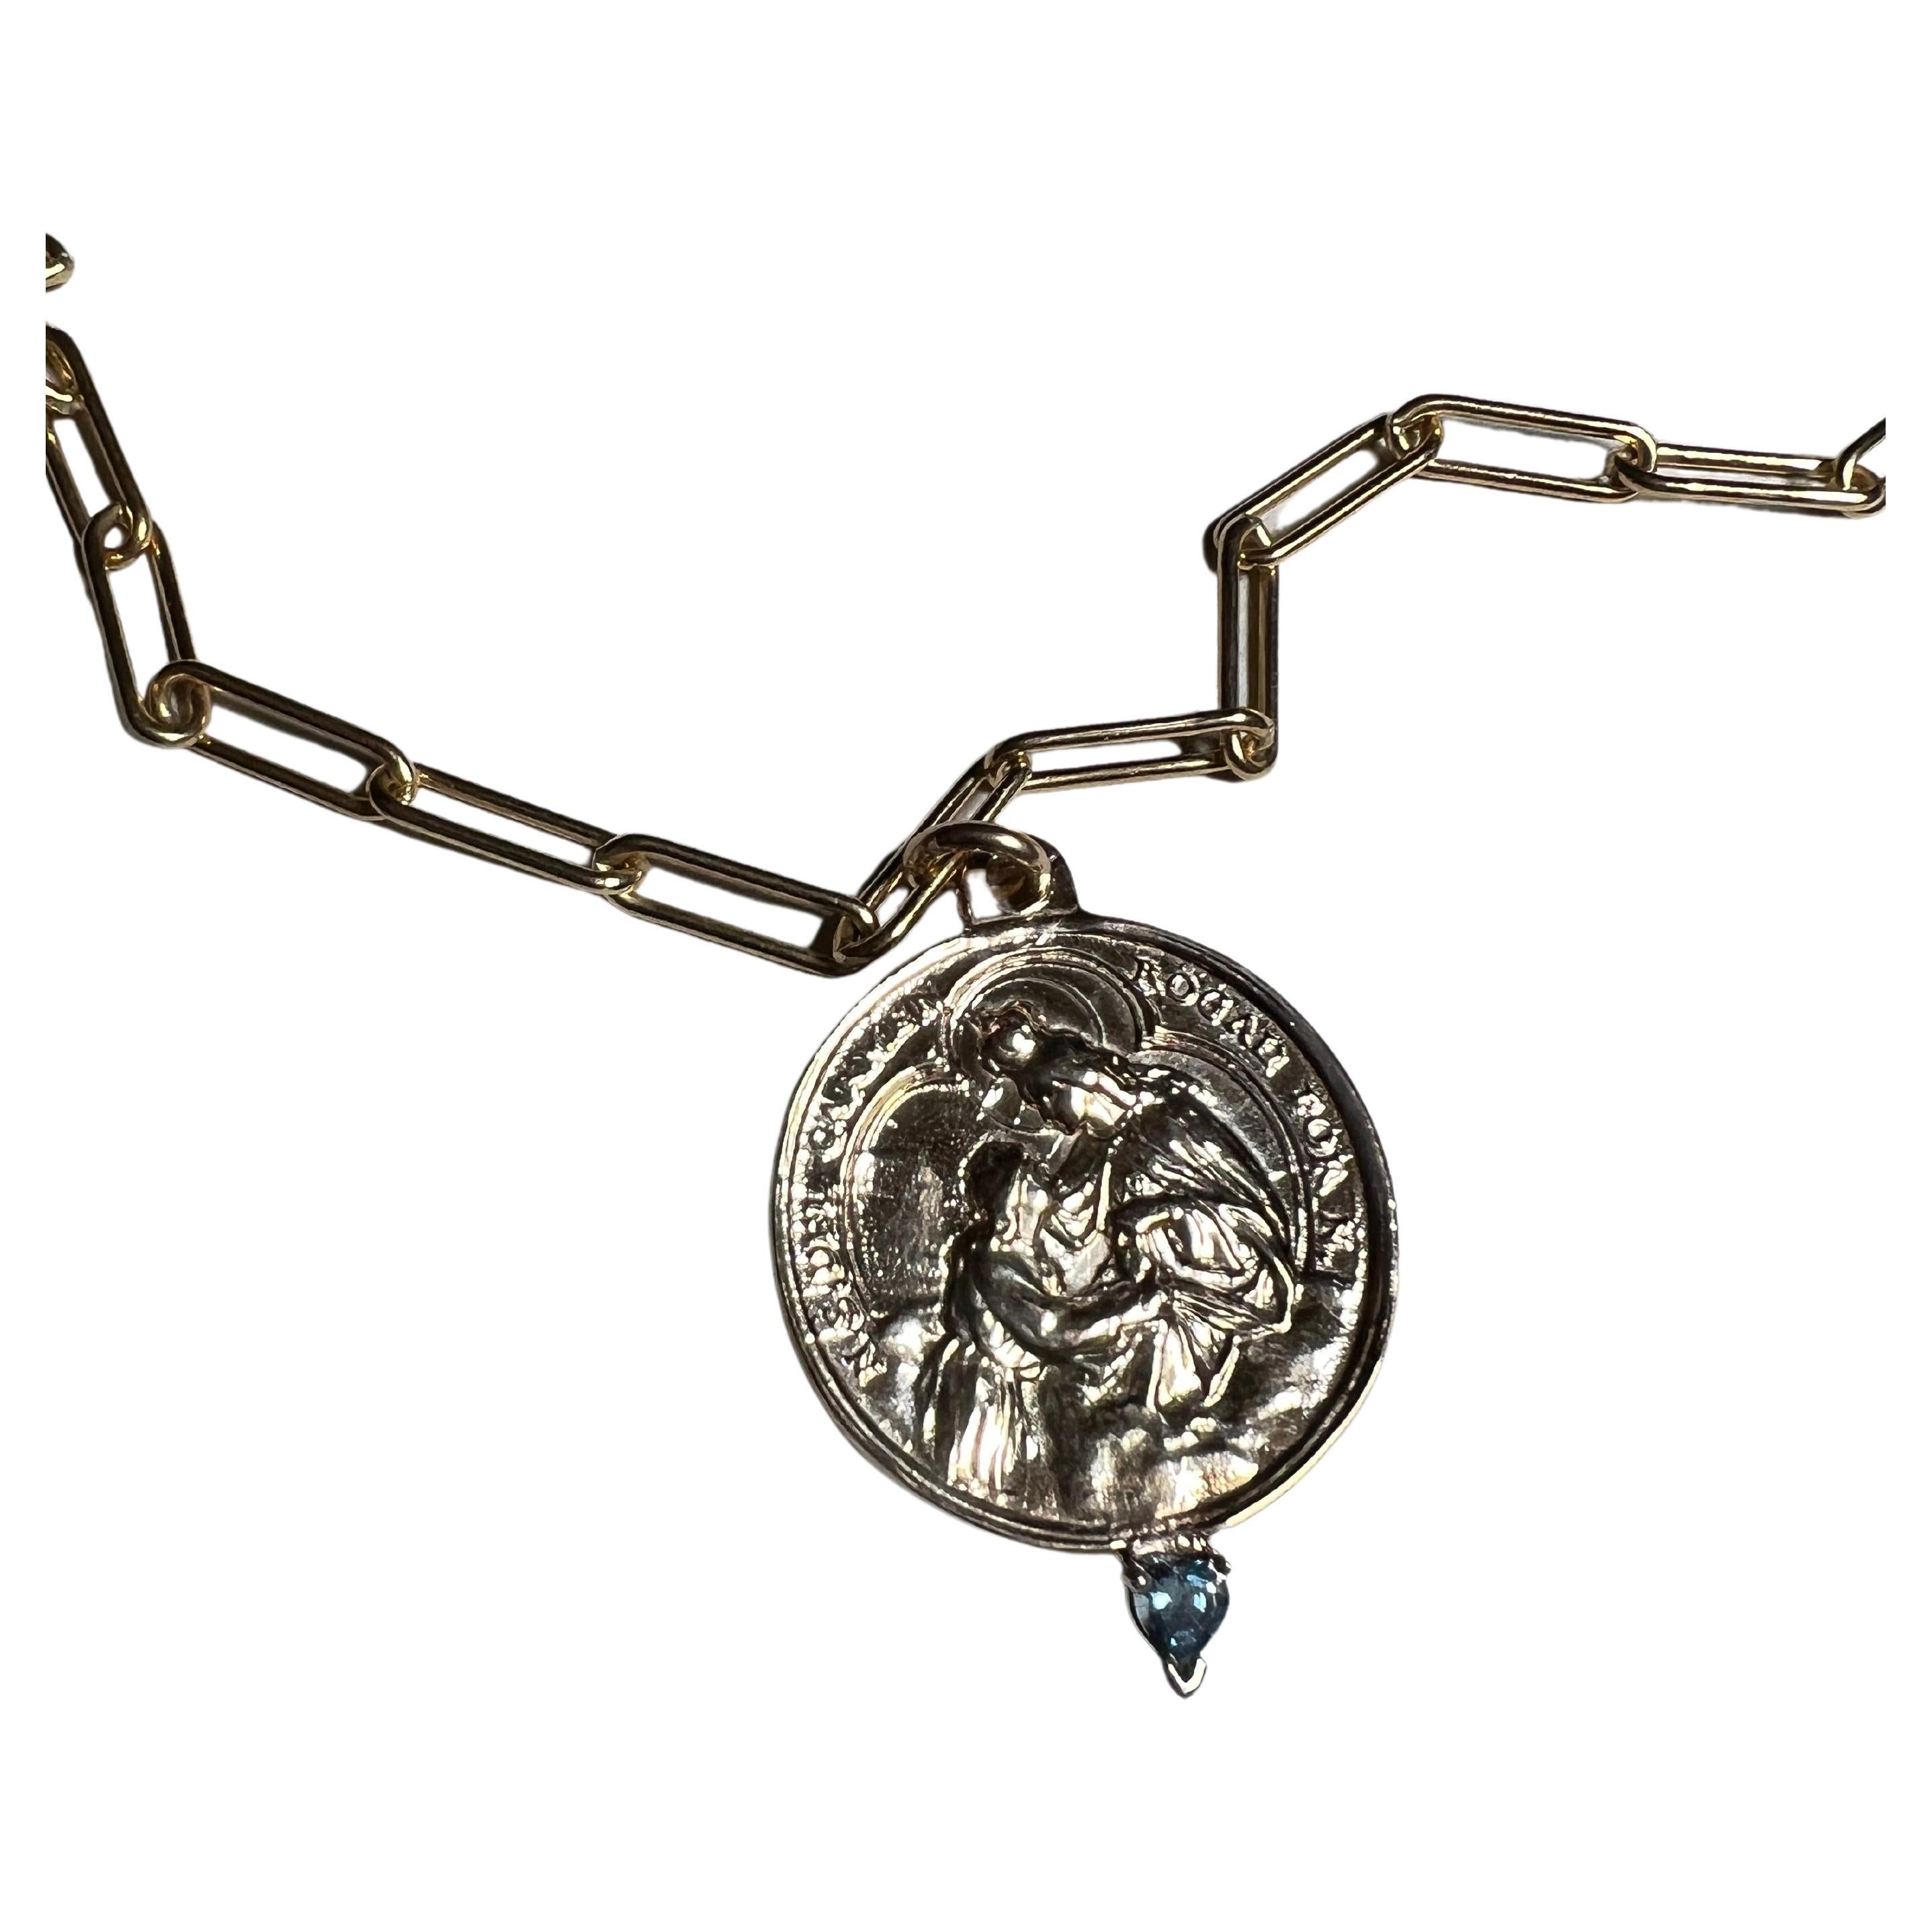 Coeur d'aigue-marine sur une médaille avec la Vierge du Carmen sur une chaîne de collier remplie d'or

Longueur : 28